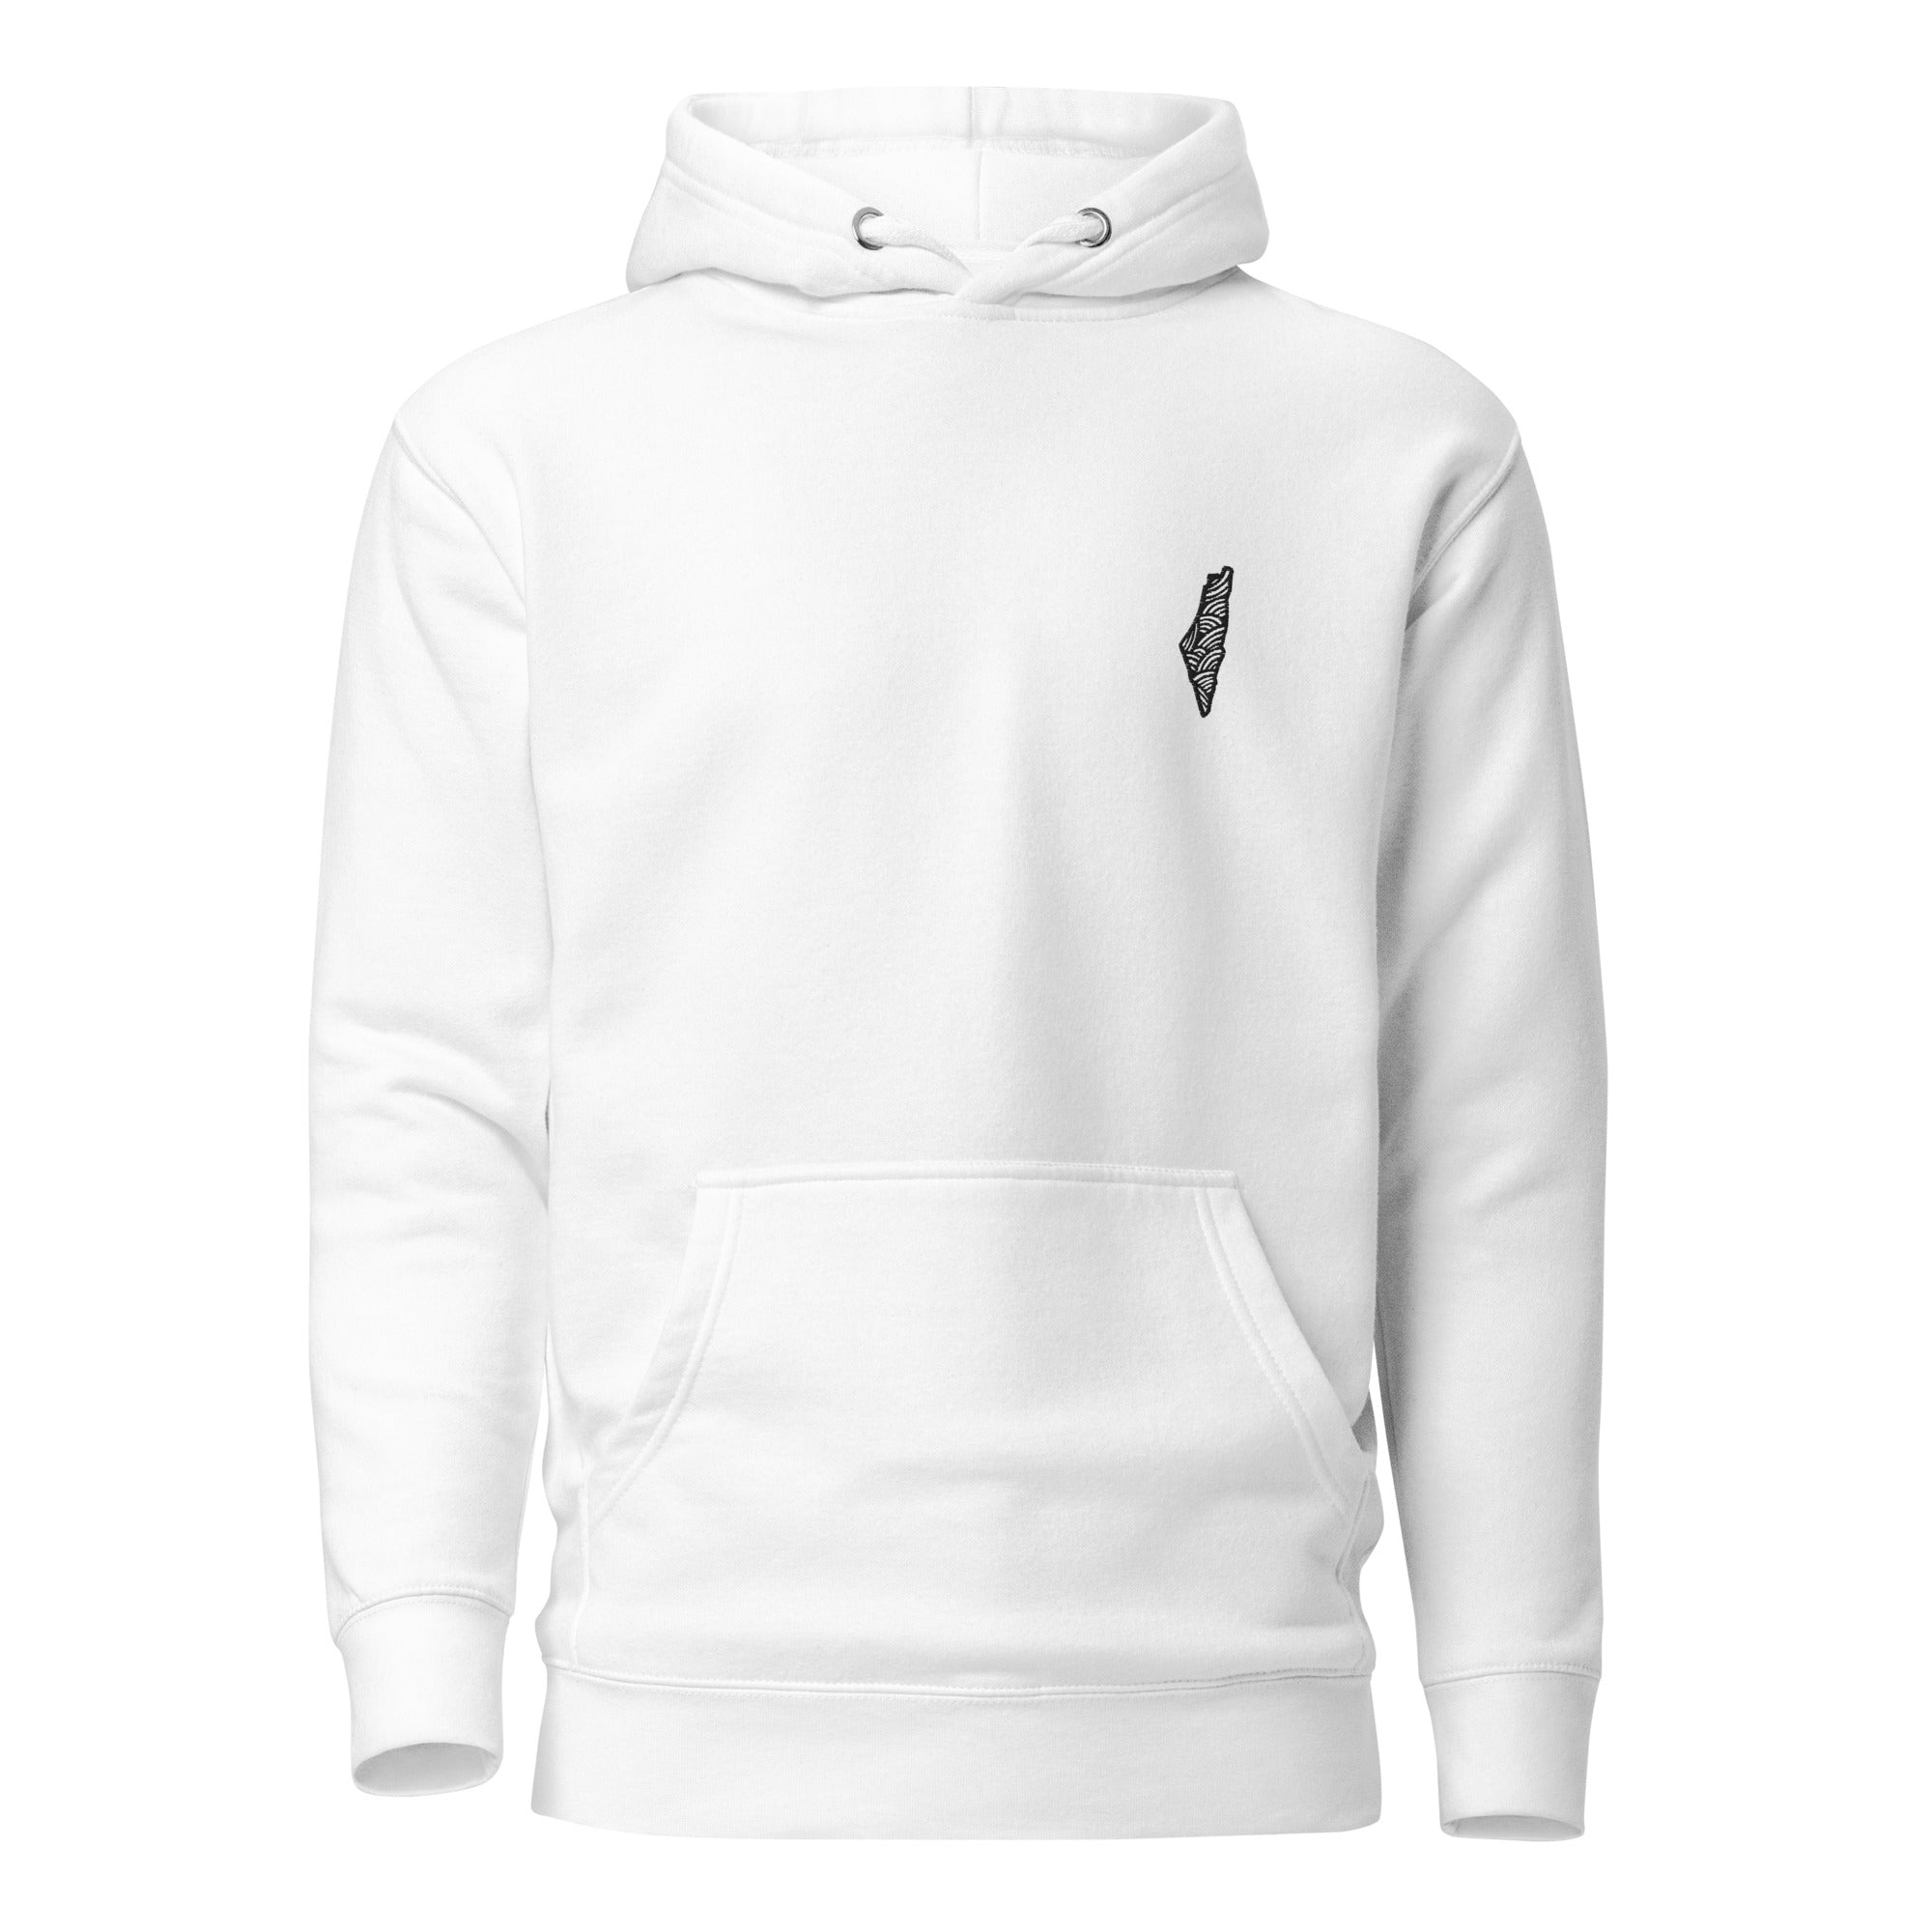 unisex-premium-hoodie-white-front-65e5cdb94def2.jpg